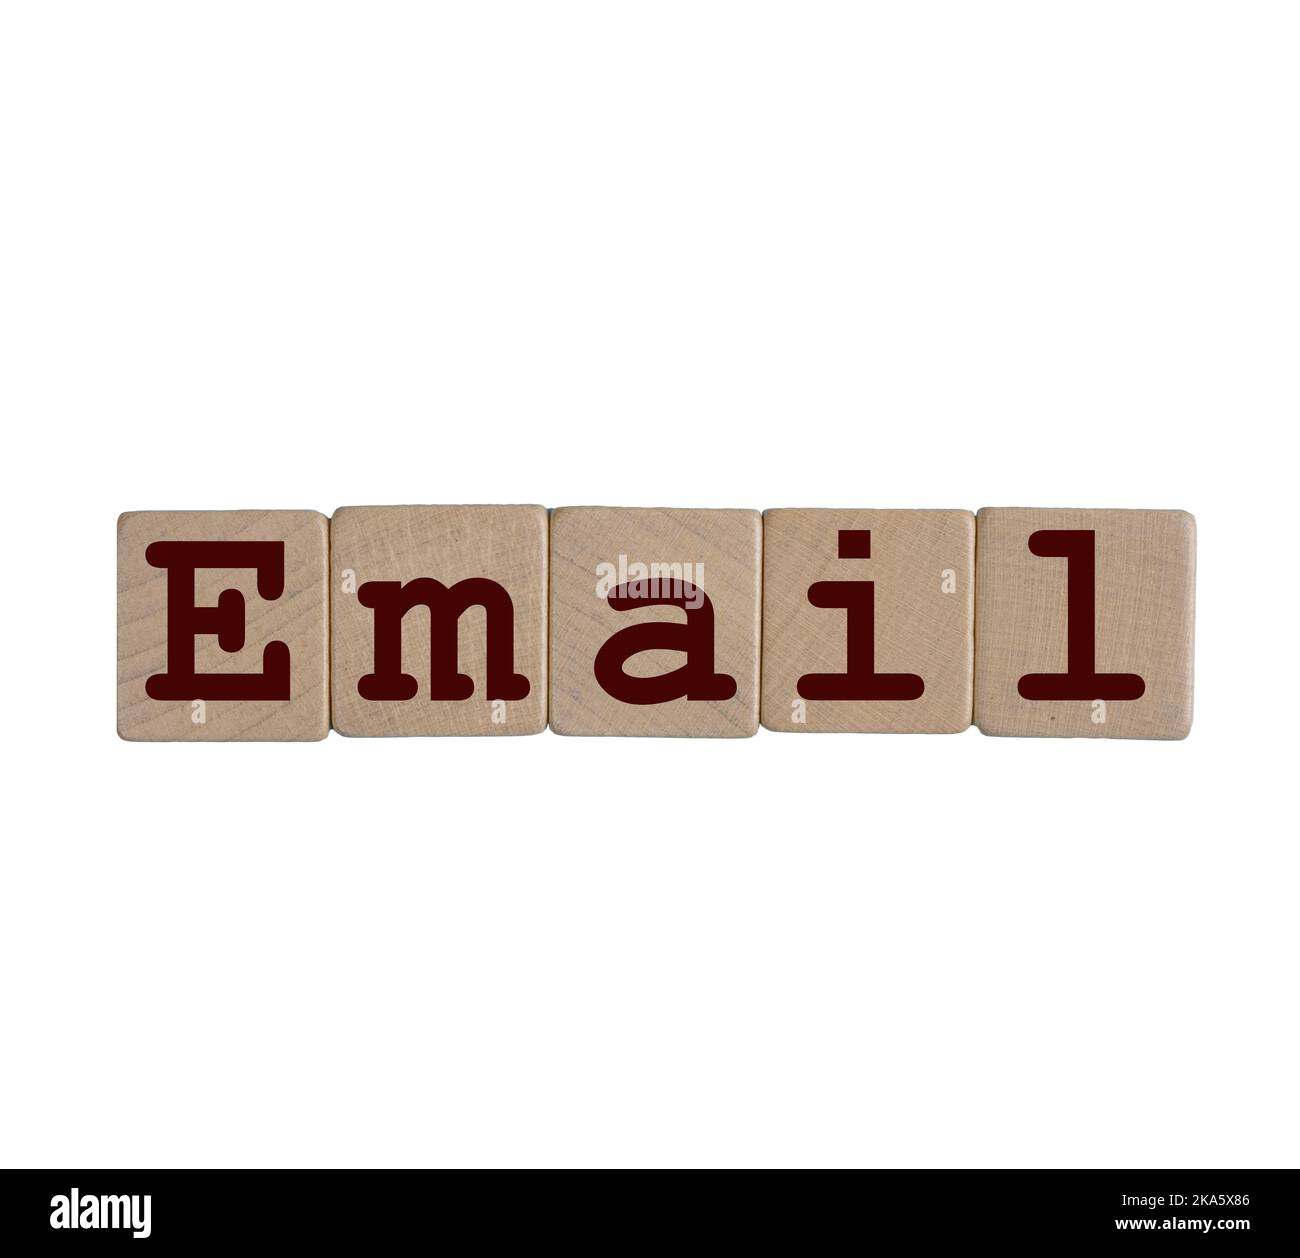 Le mot E-mail formé avec des chevilles en bois sur un fond transparent Banque D'Images